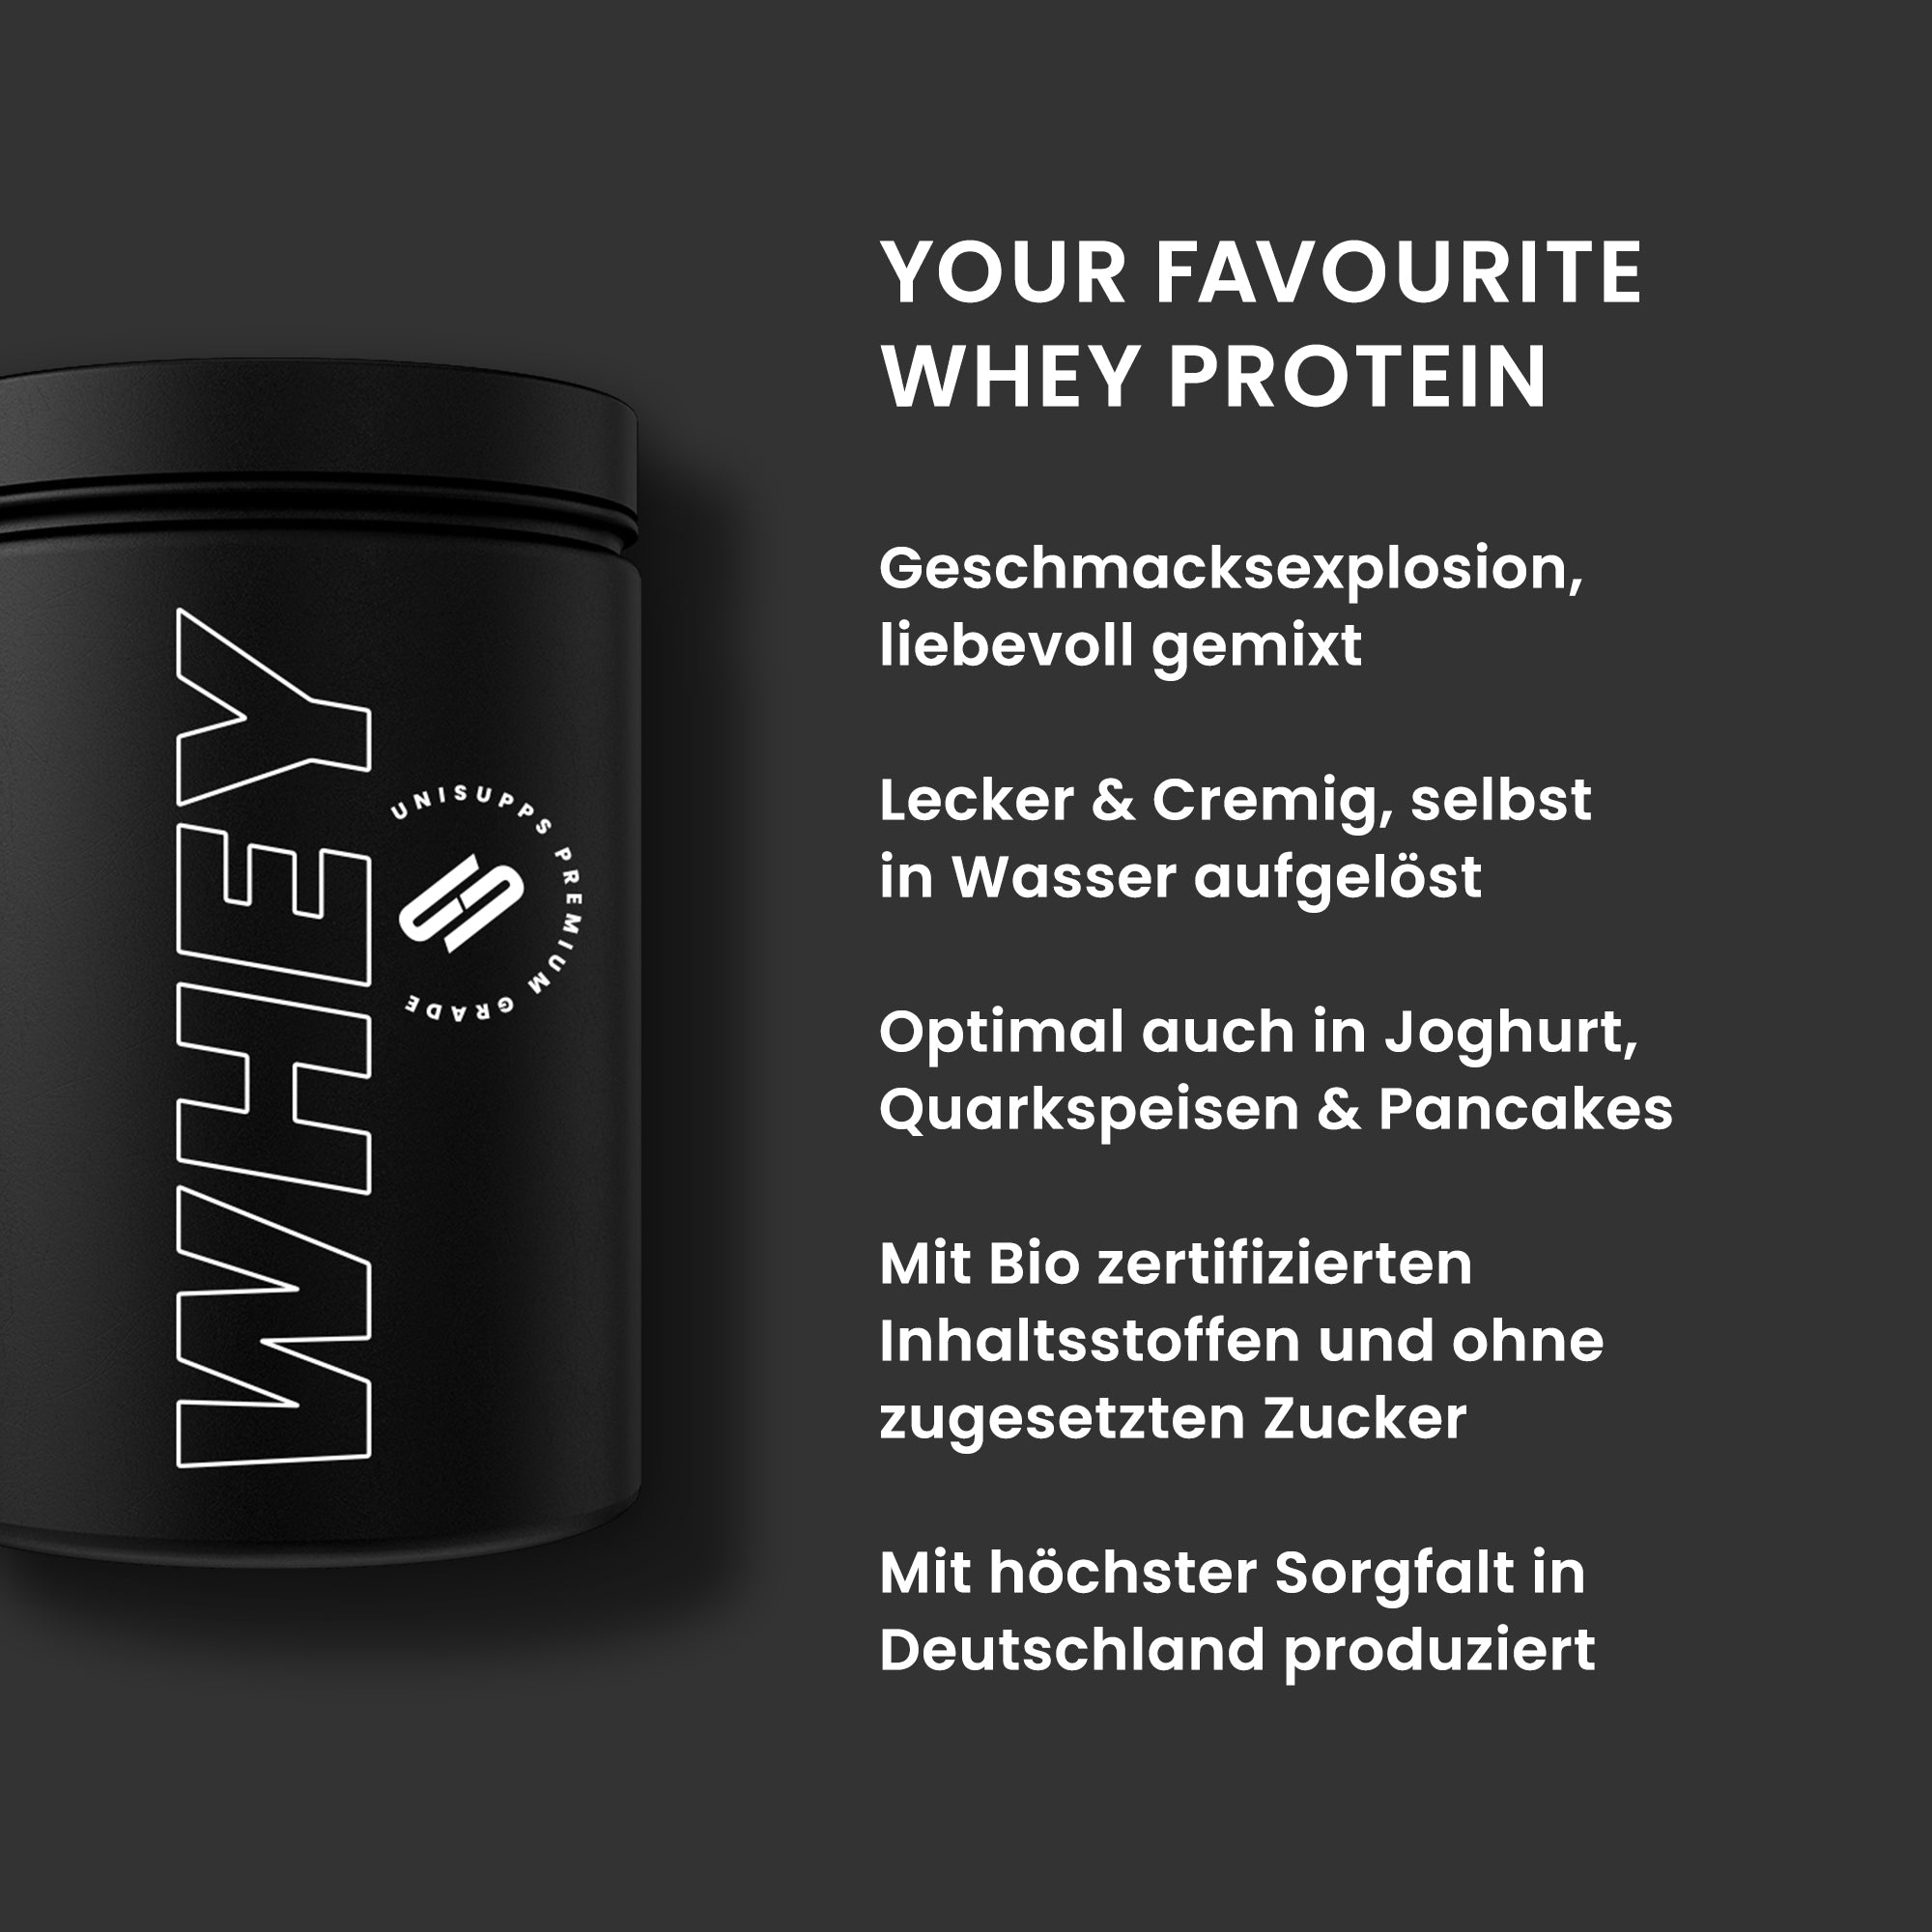 Whey Protein 900g